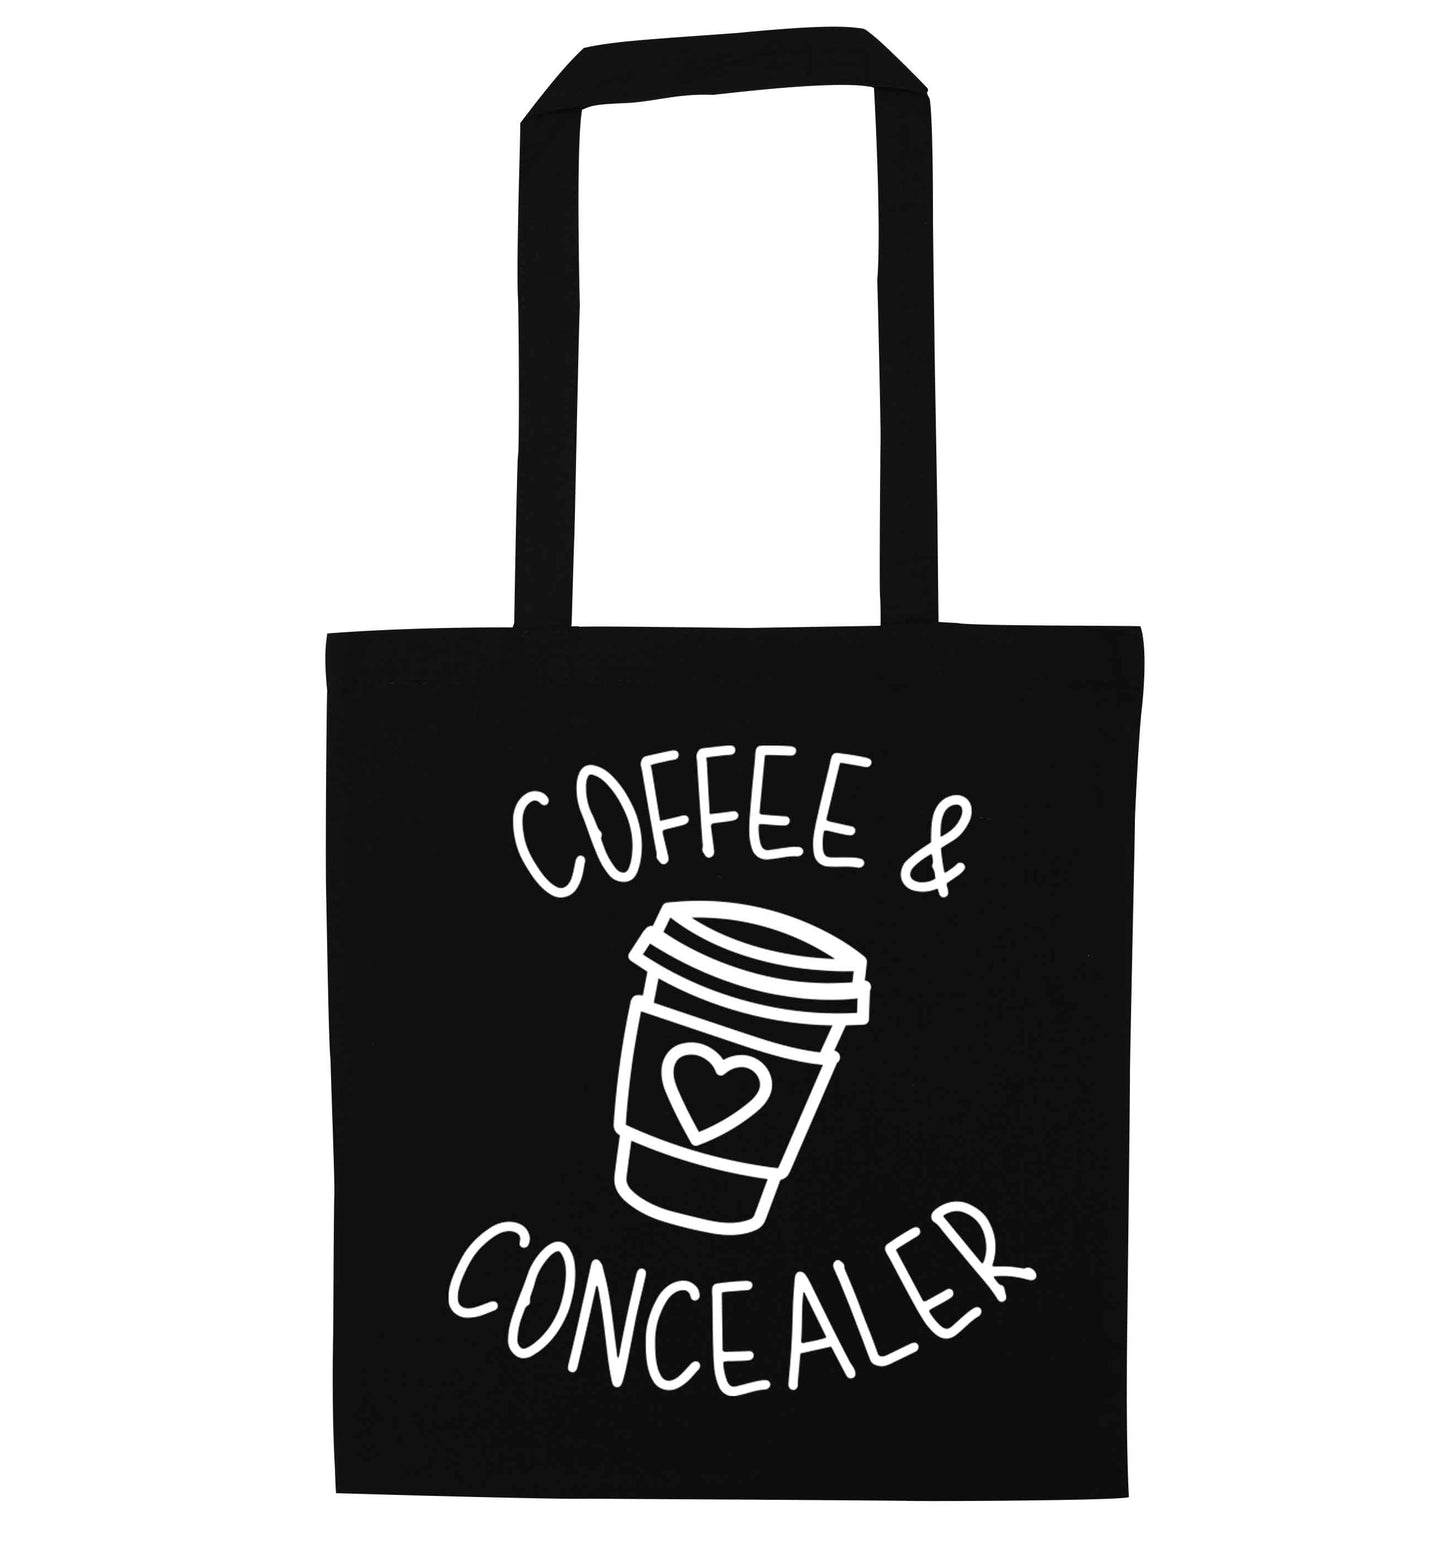 Coffee and concealer black tote bag